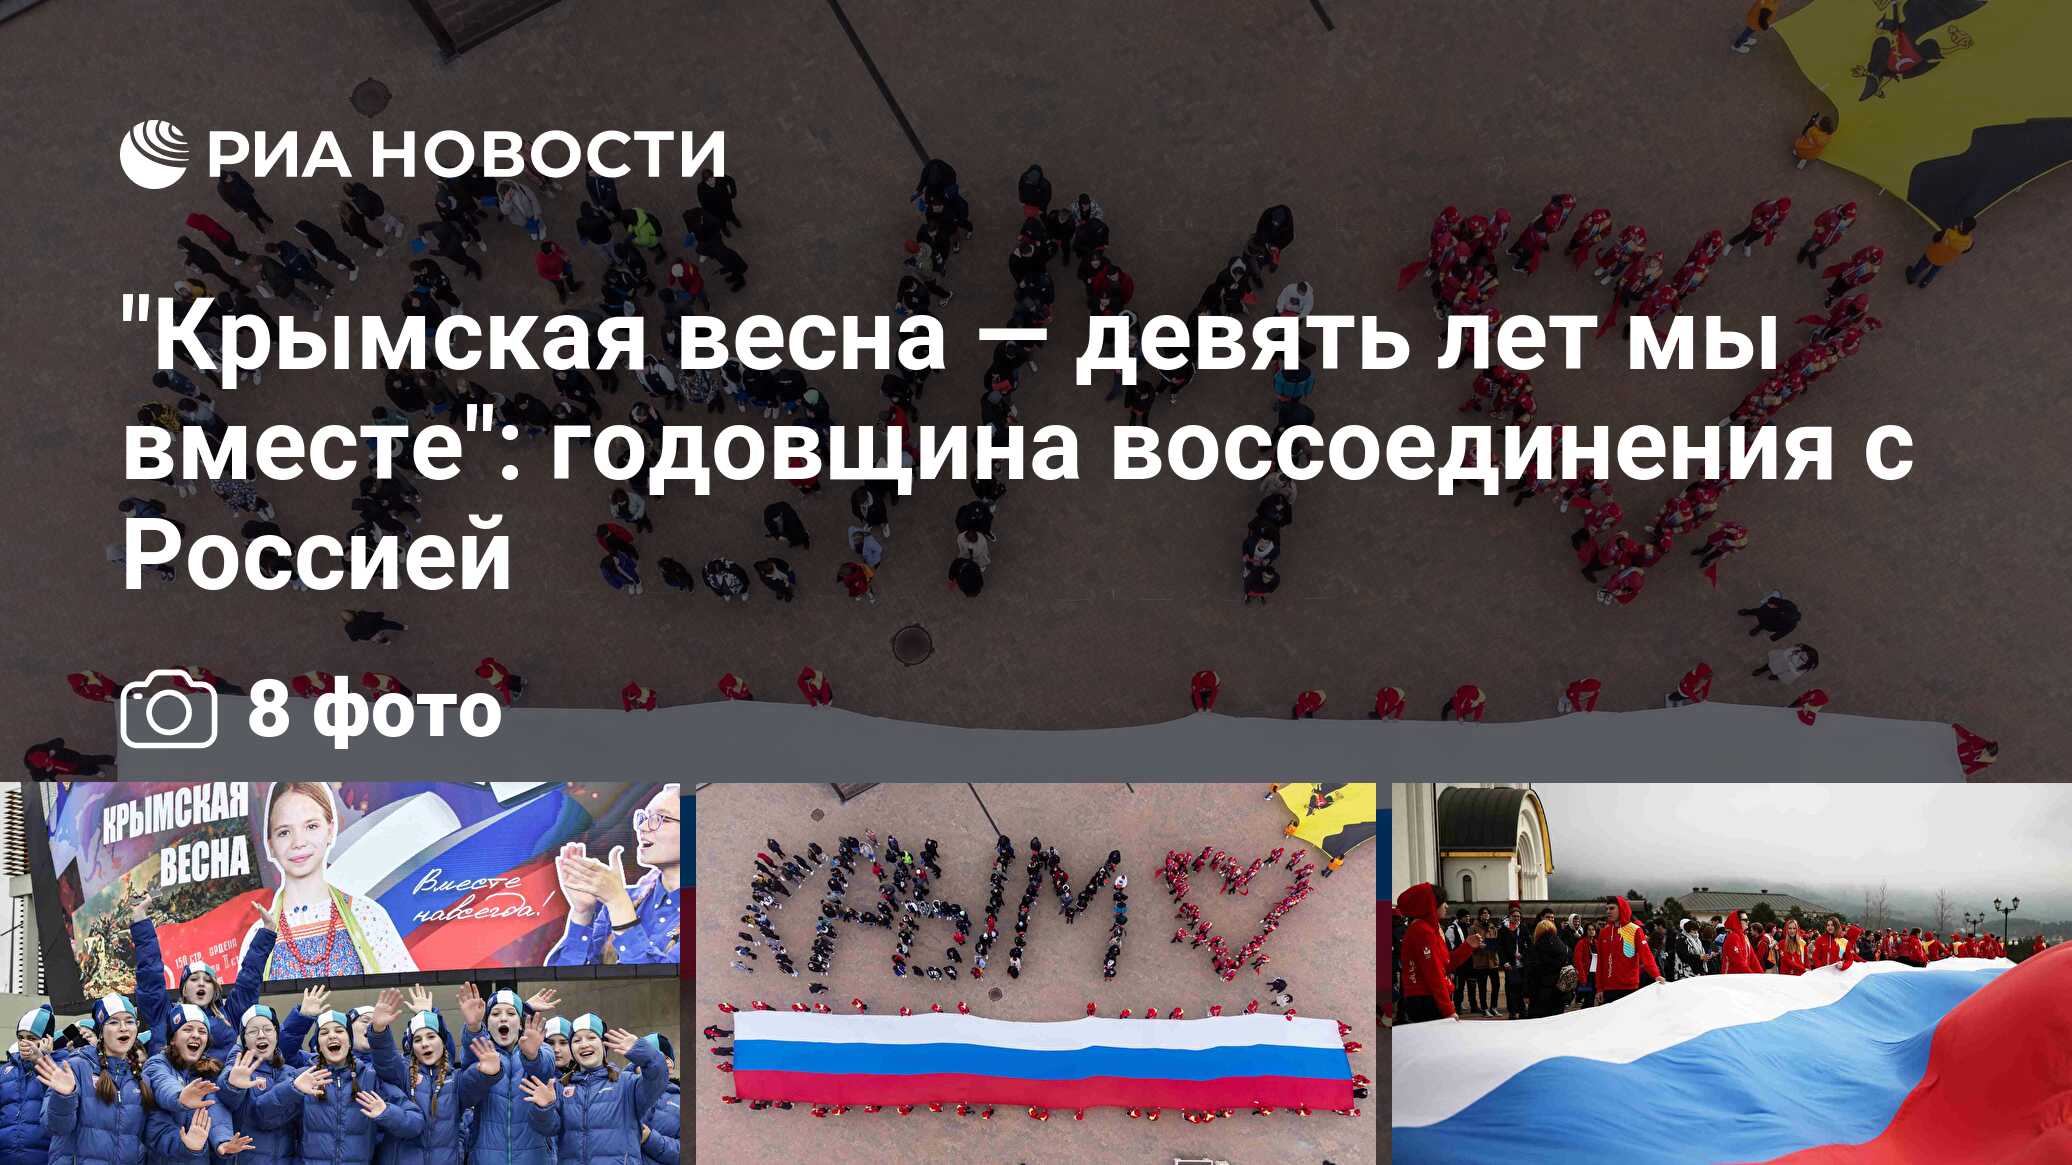 Поздравление с 10 летием крыма россией воссоединения